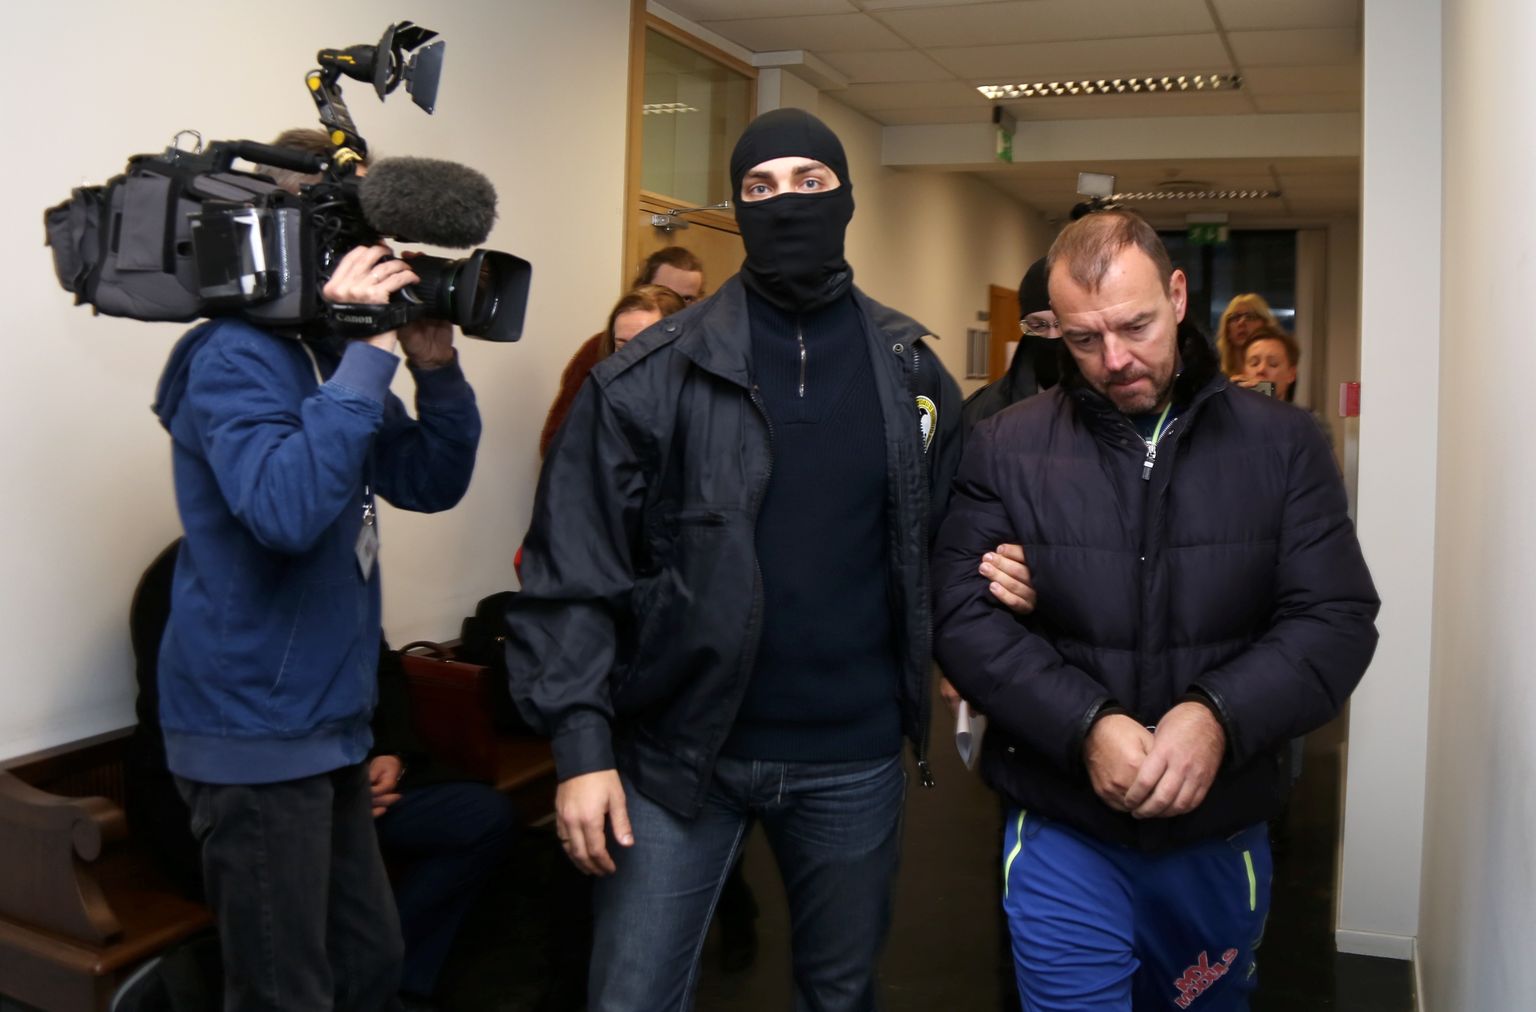 Korupcijas novēršanas un apkarošanas biroja aizturētais uzņēmējs Māris Martinsons tiek konvojēts pēc tiesas sēdes Rīgas pilsētas Vidzemes priekšpilsētas tiesā, kur viņam piemēroja drošības līdzekli - apcietinājumu.